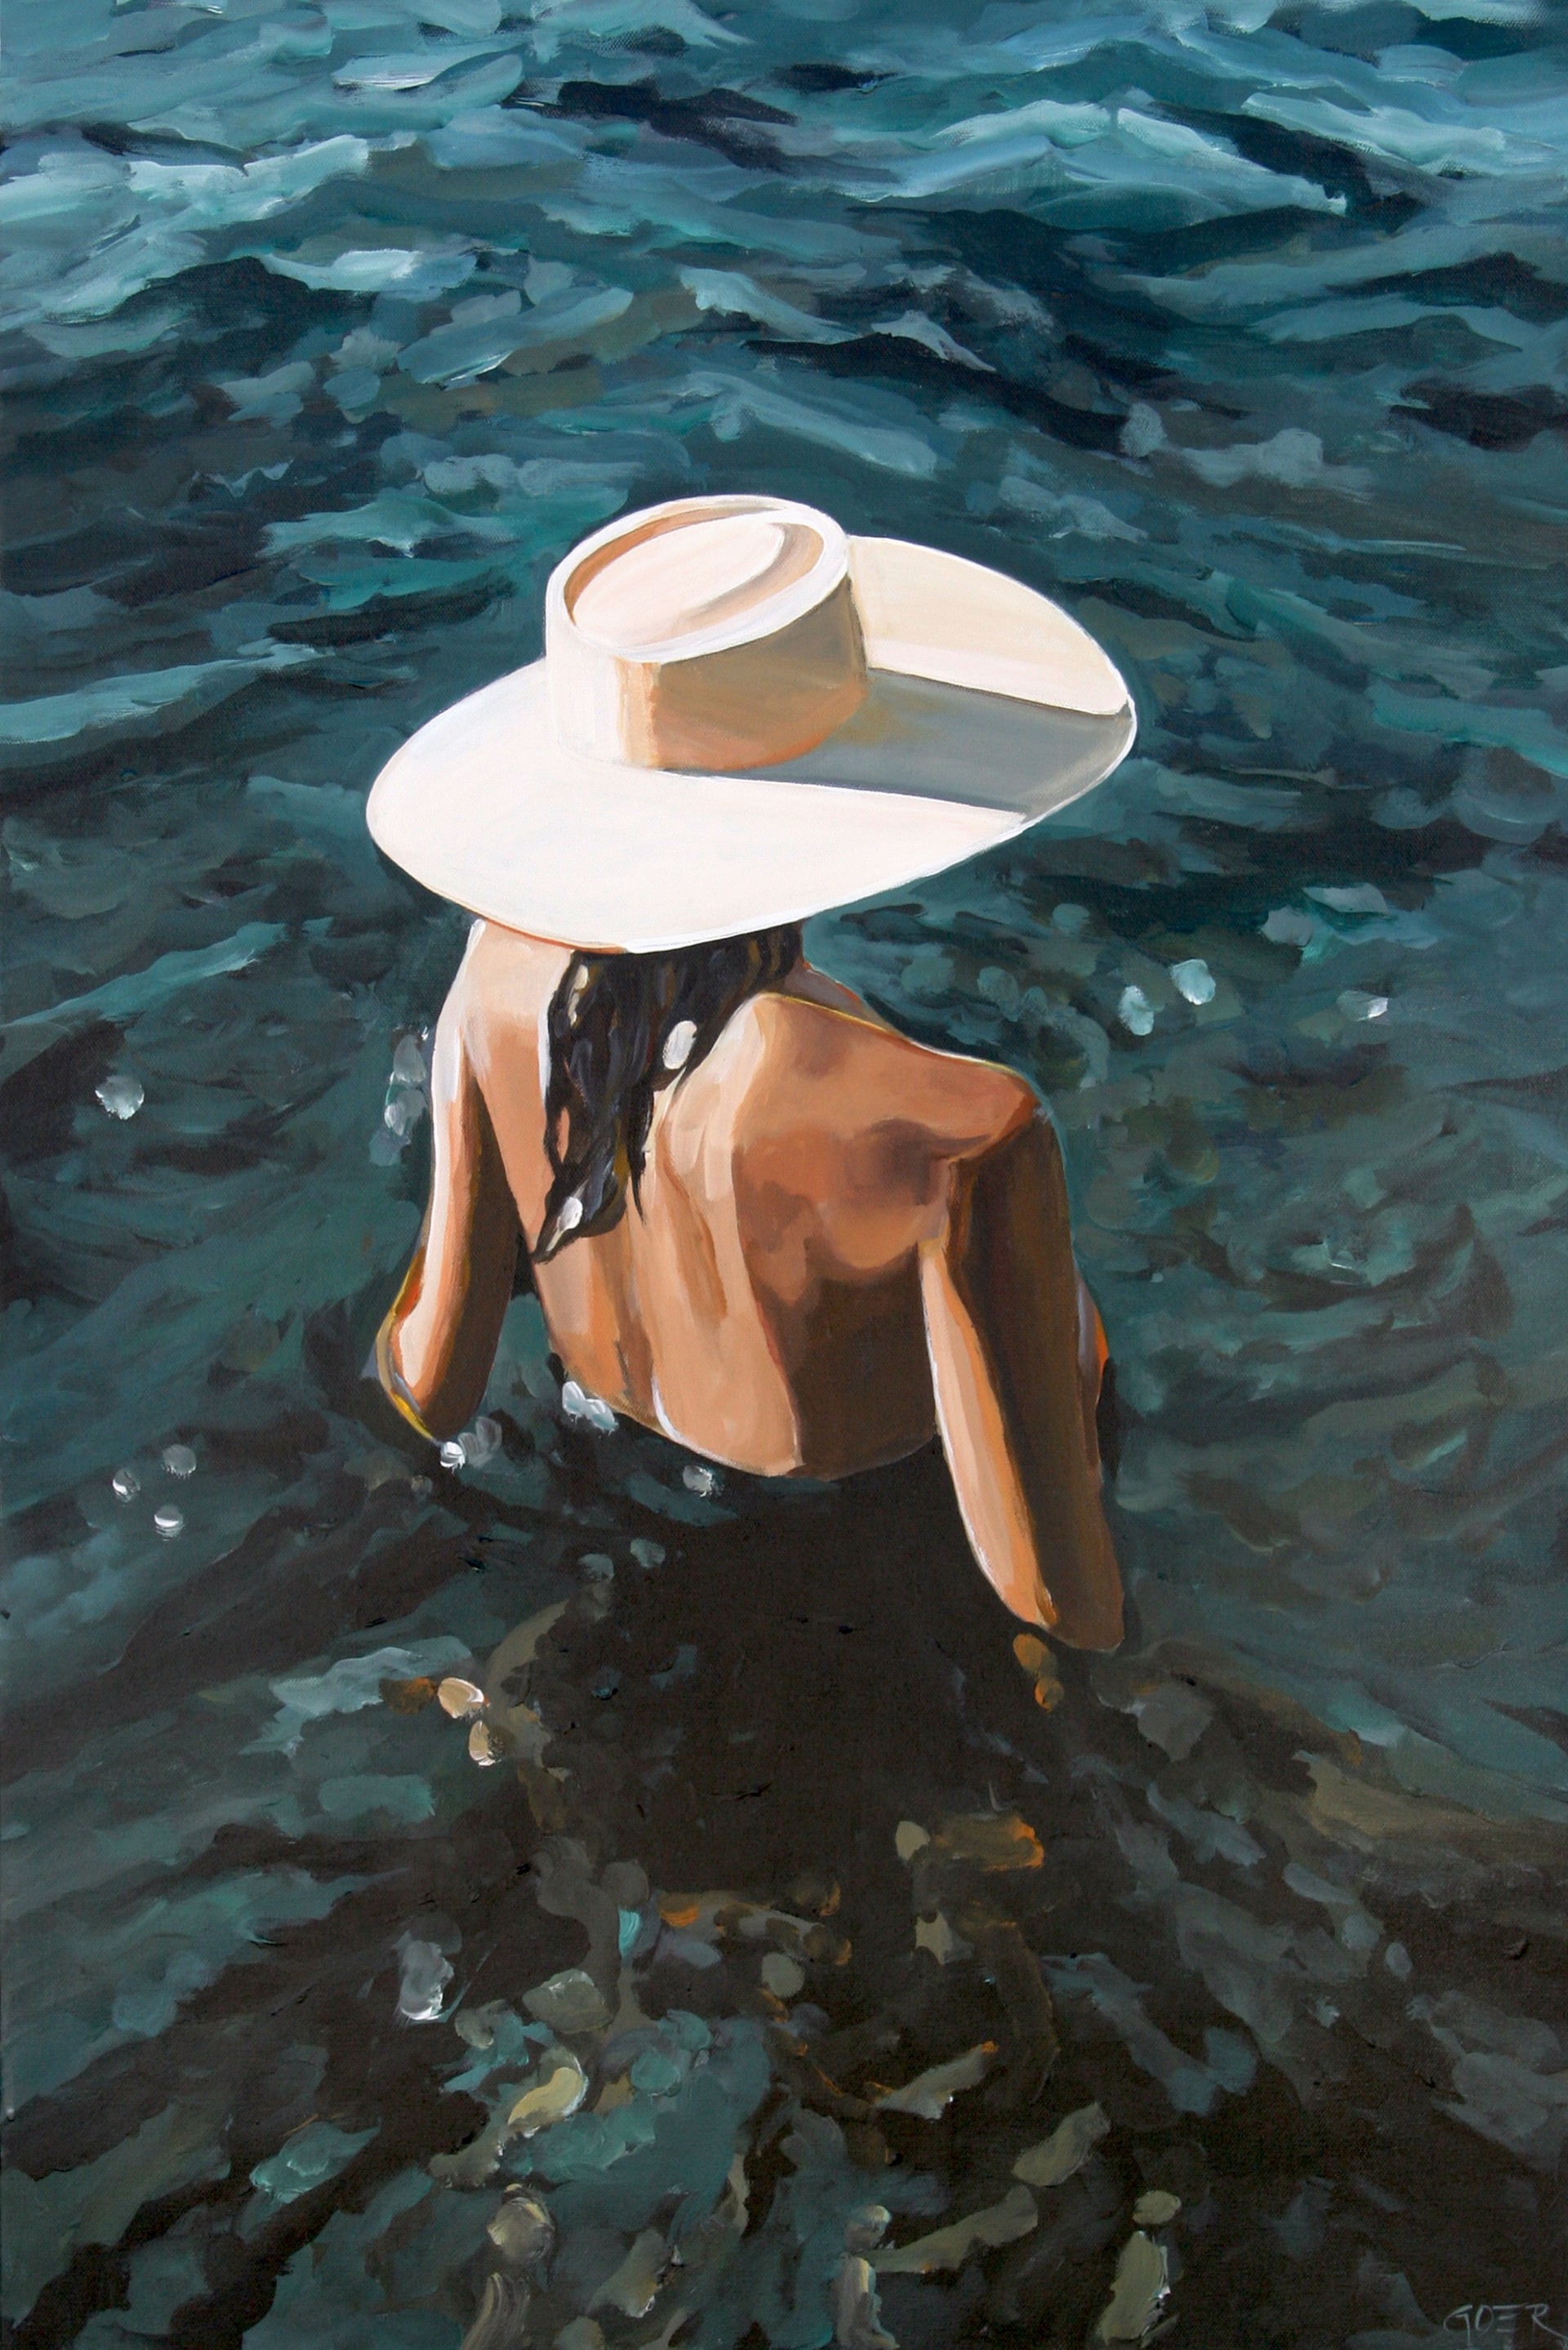 Abiding Tide by Chelsea Goer